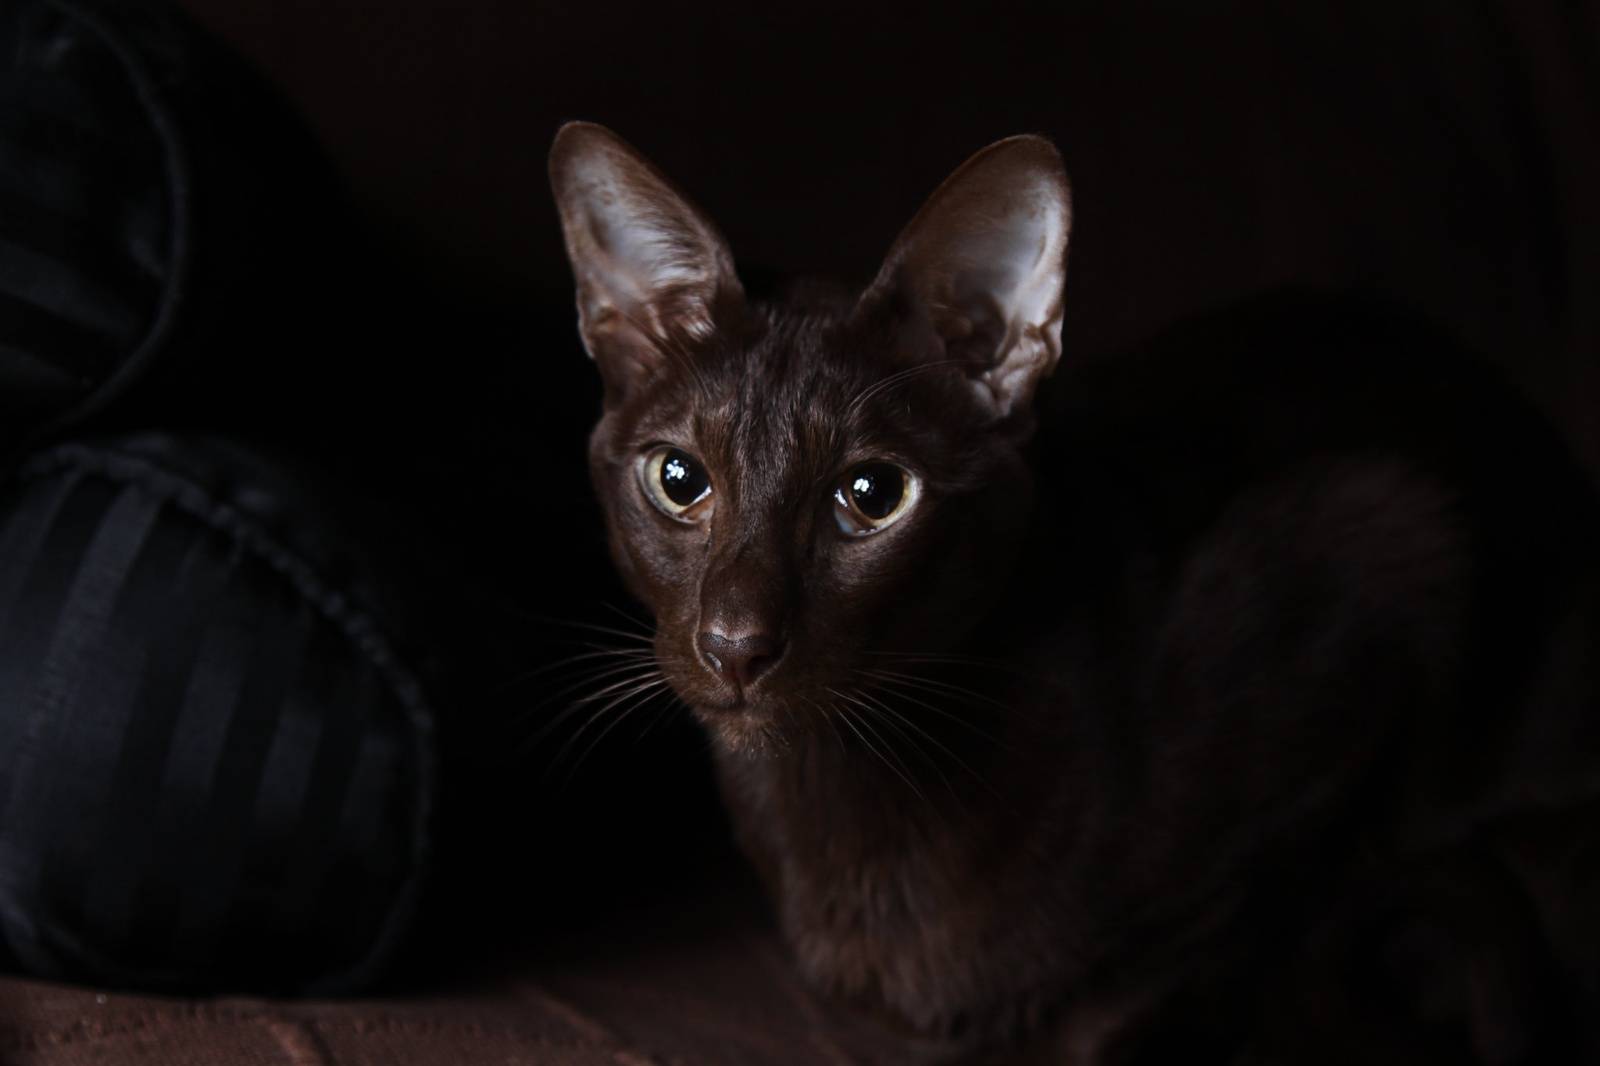 Кошка гавана браун — ориентальная тайская красавица